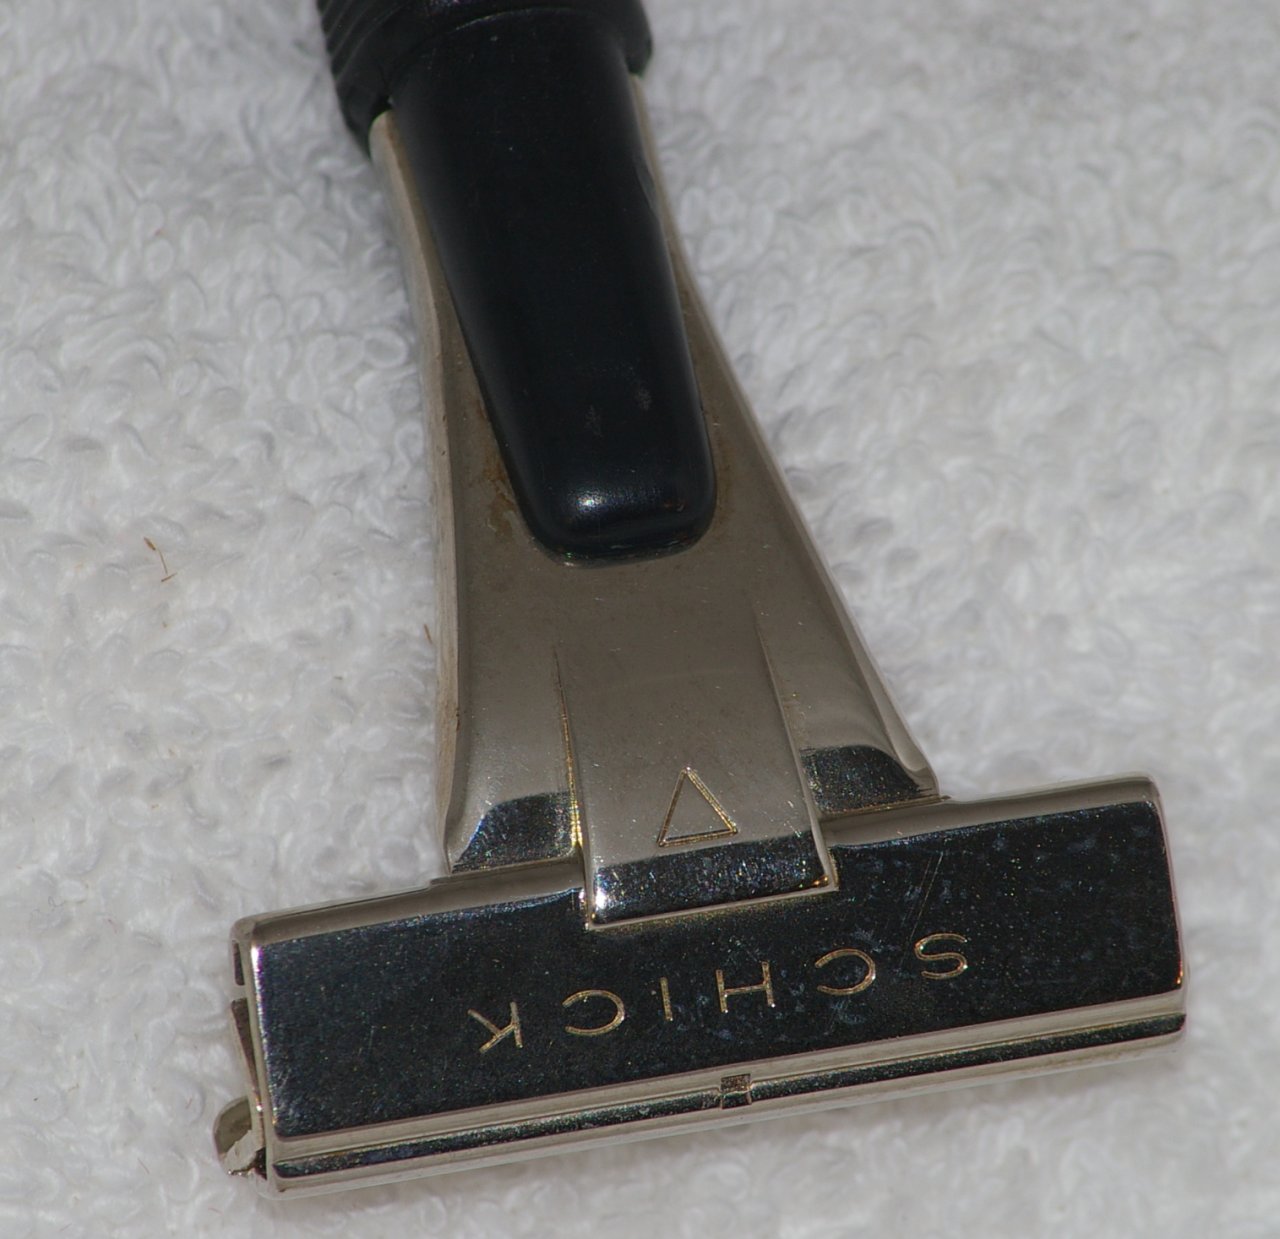 Schick Injector Razor Type J2, 1959